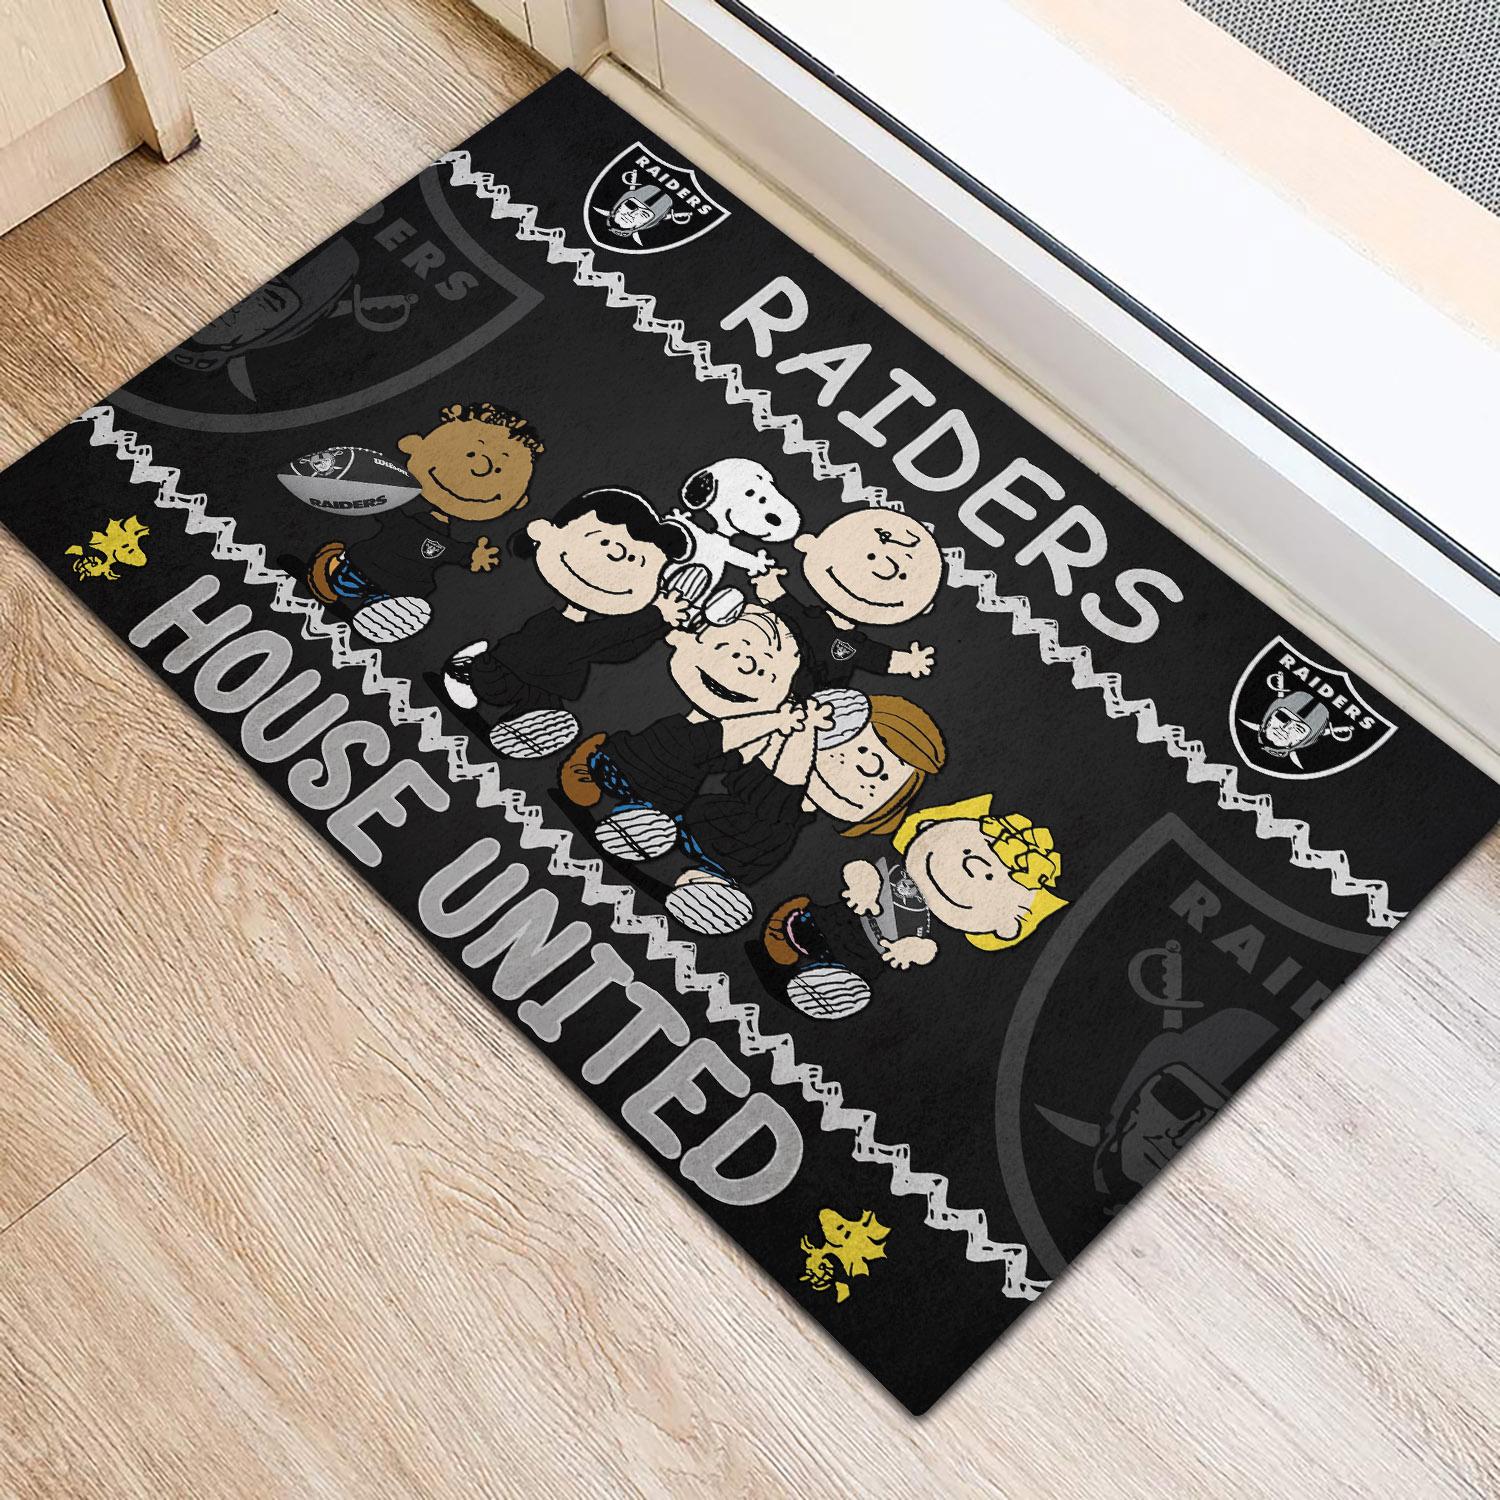 Las Vegas Raiders Peanuts House United Doormat